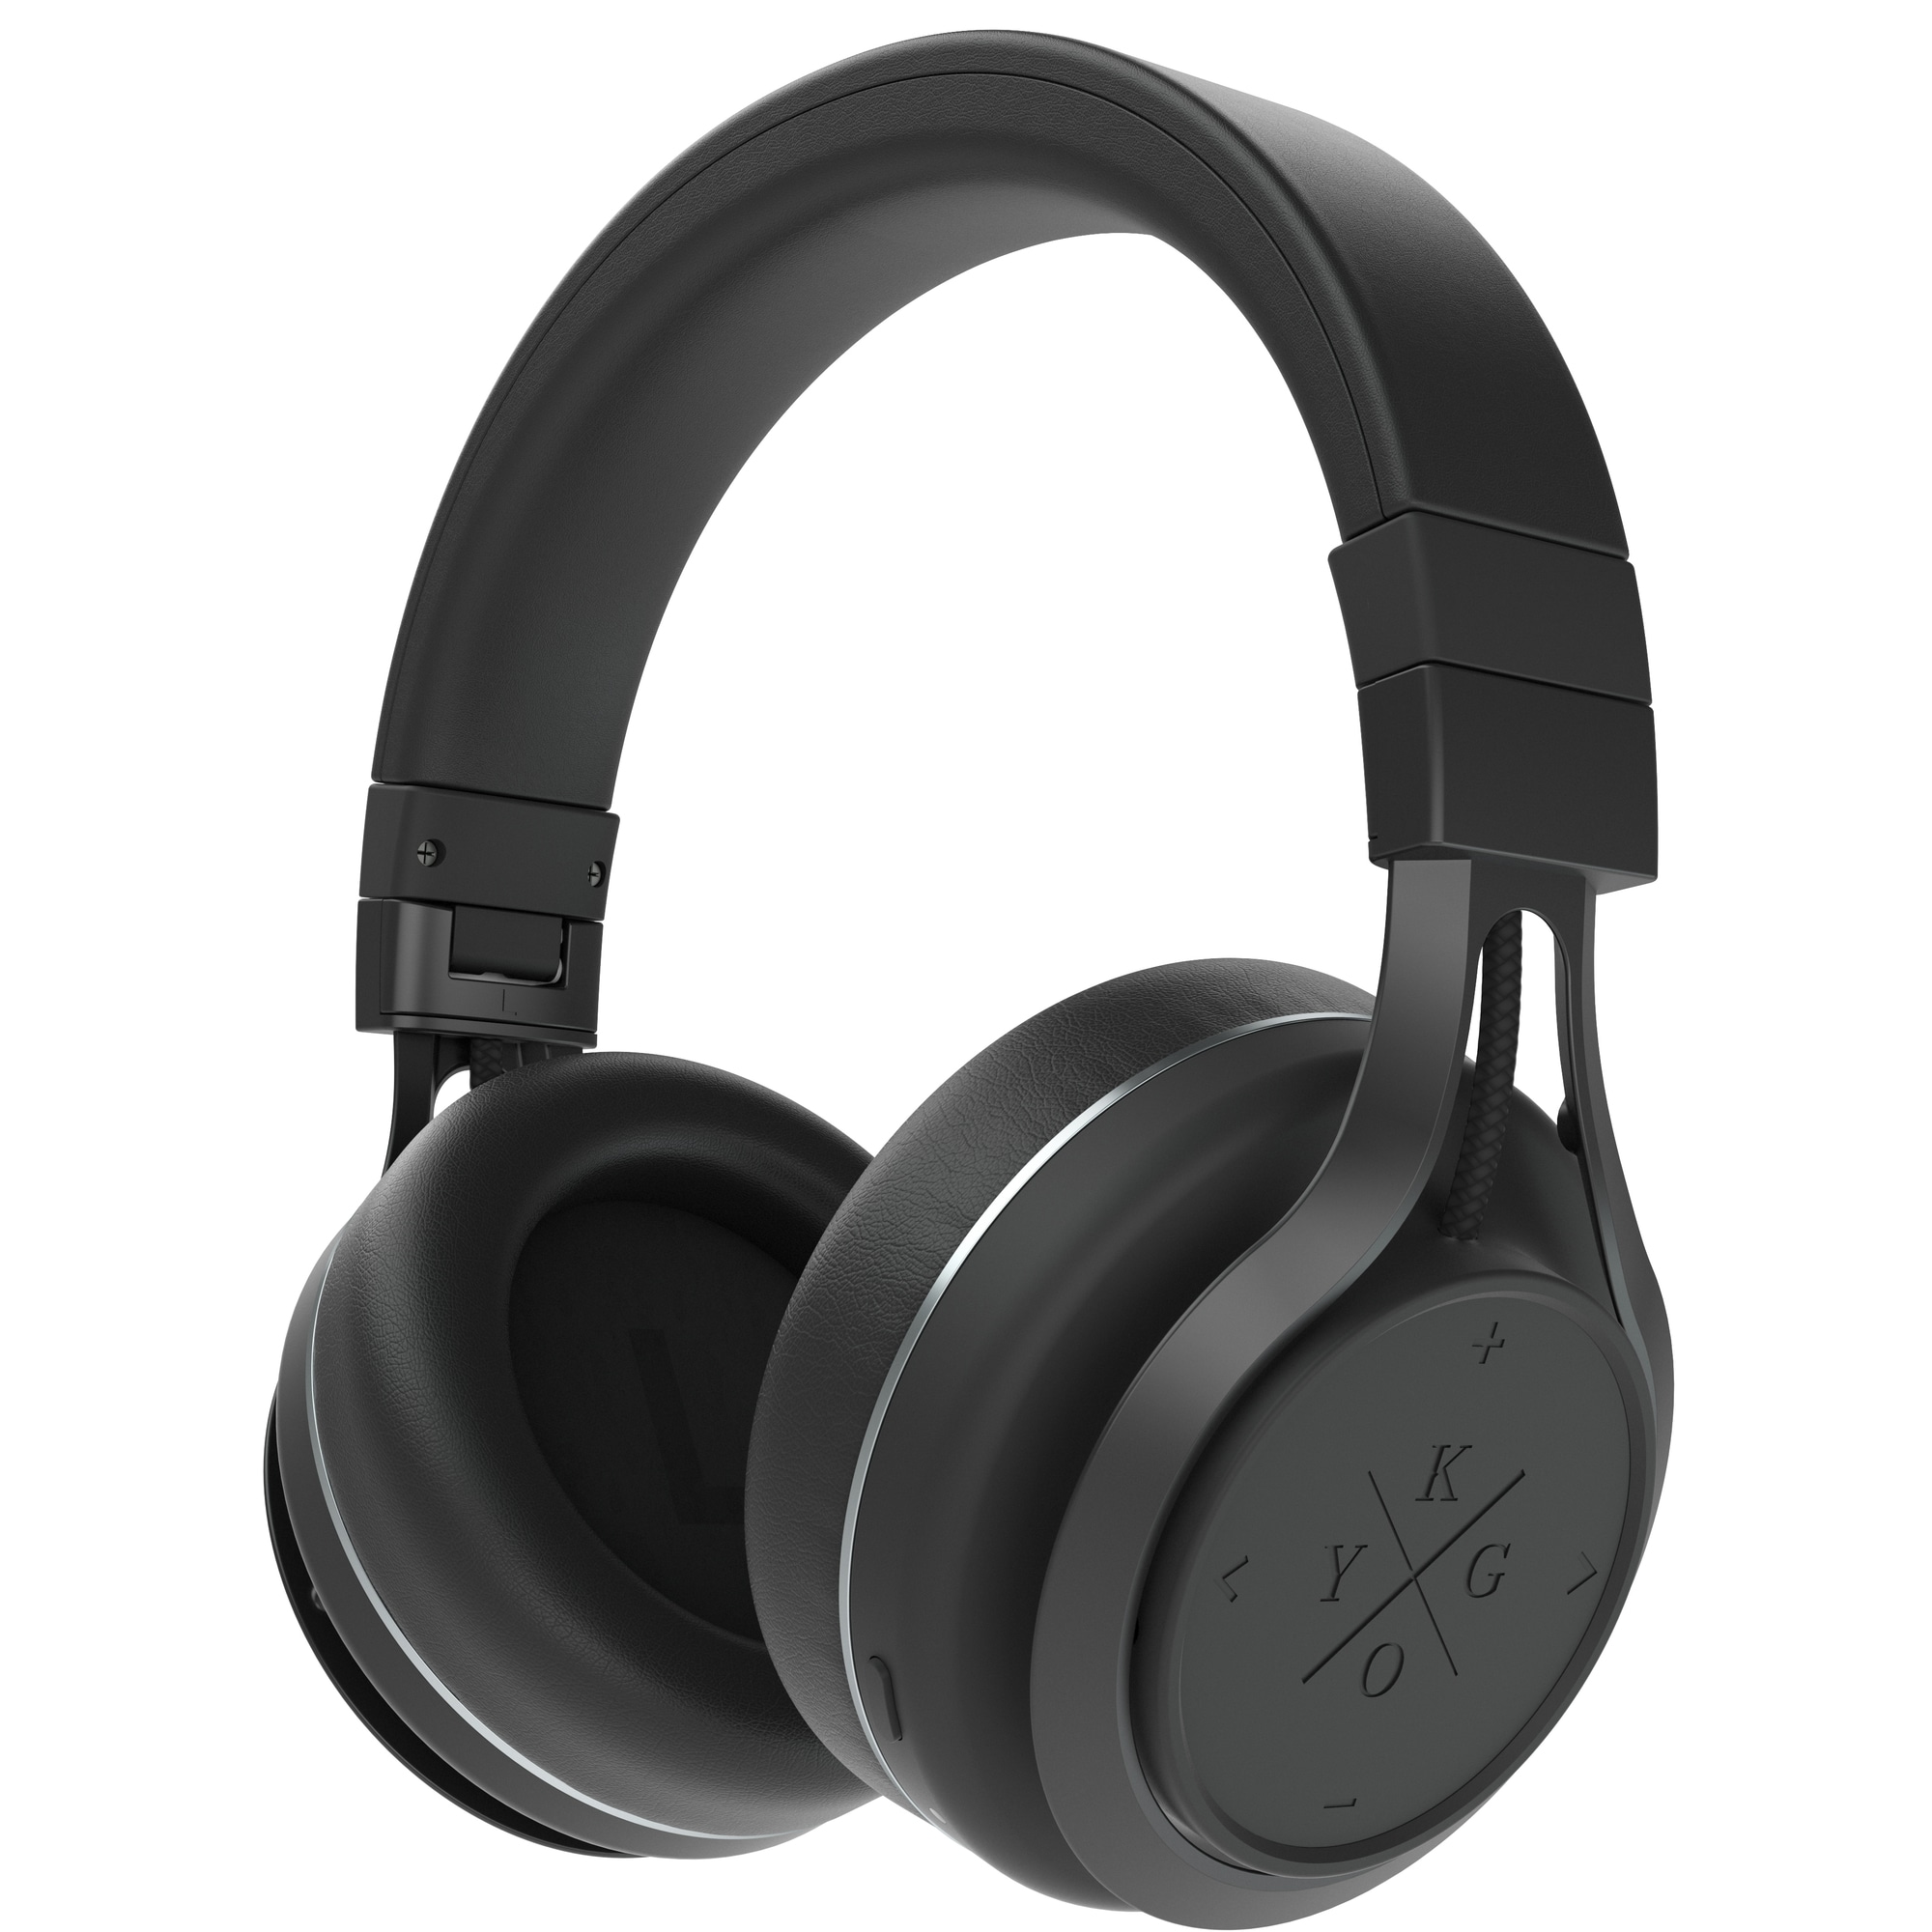 Kygo A9/600 trådløse around-ear hovedtelefoner (sort) | Elgiganten